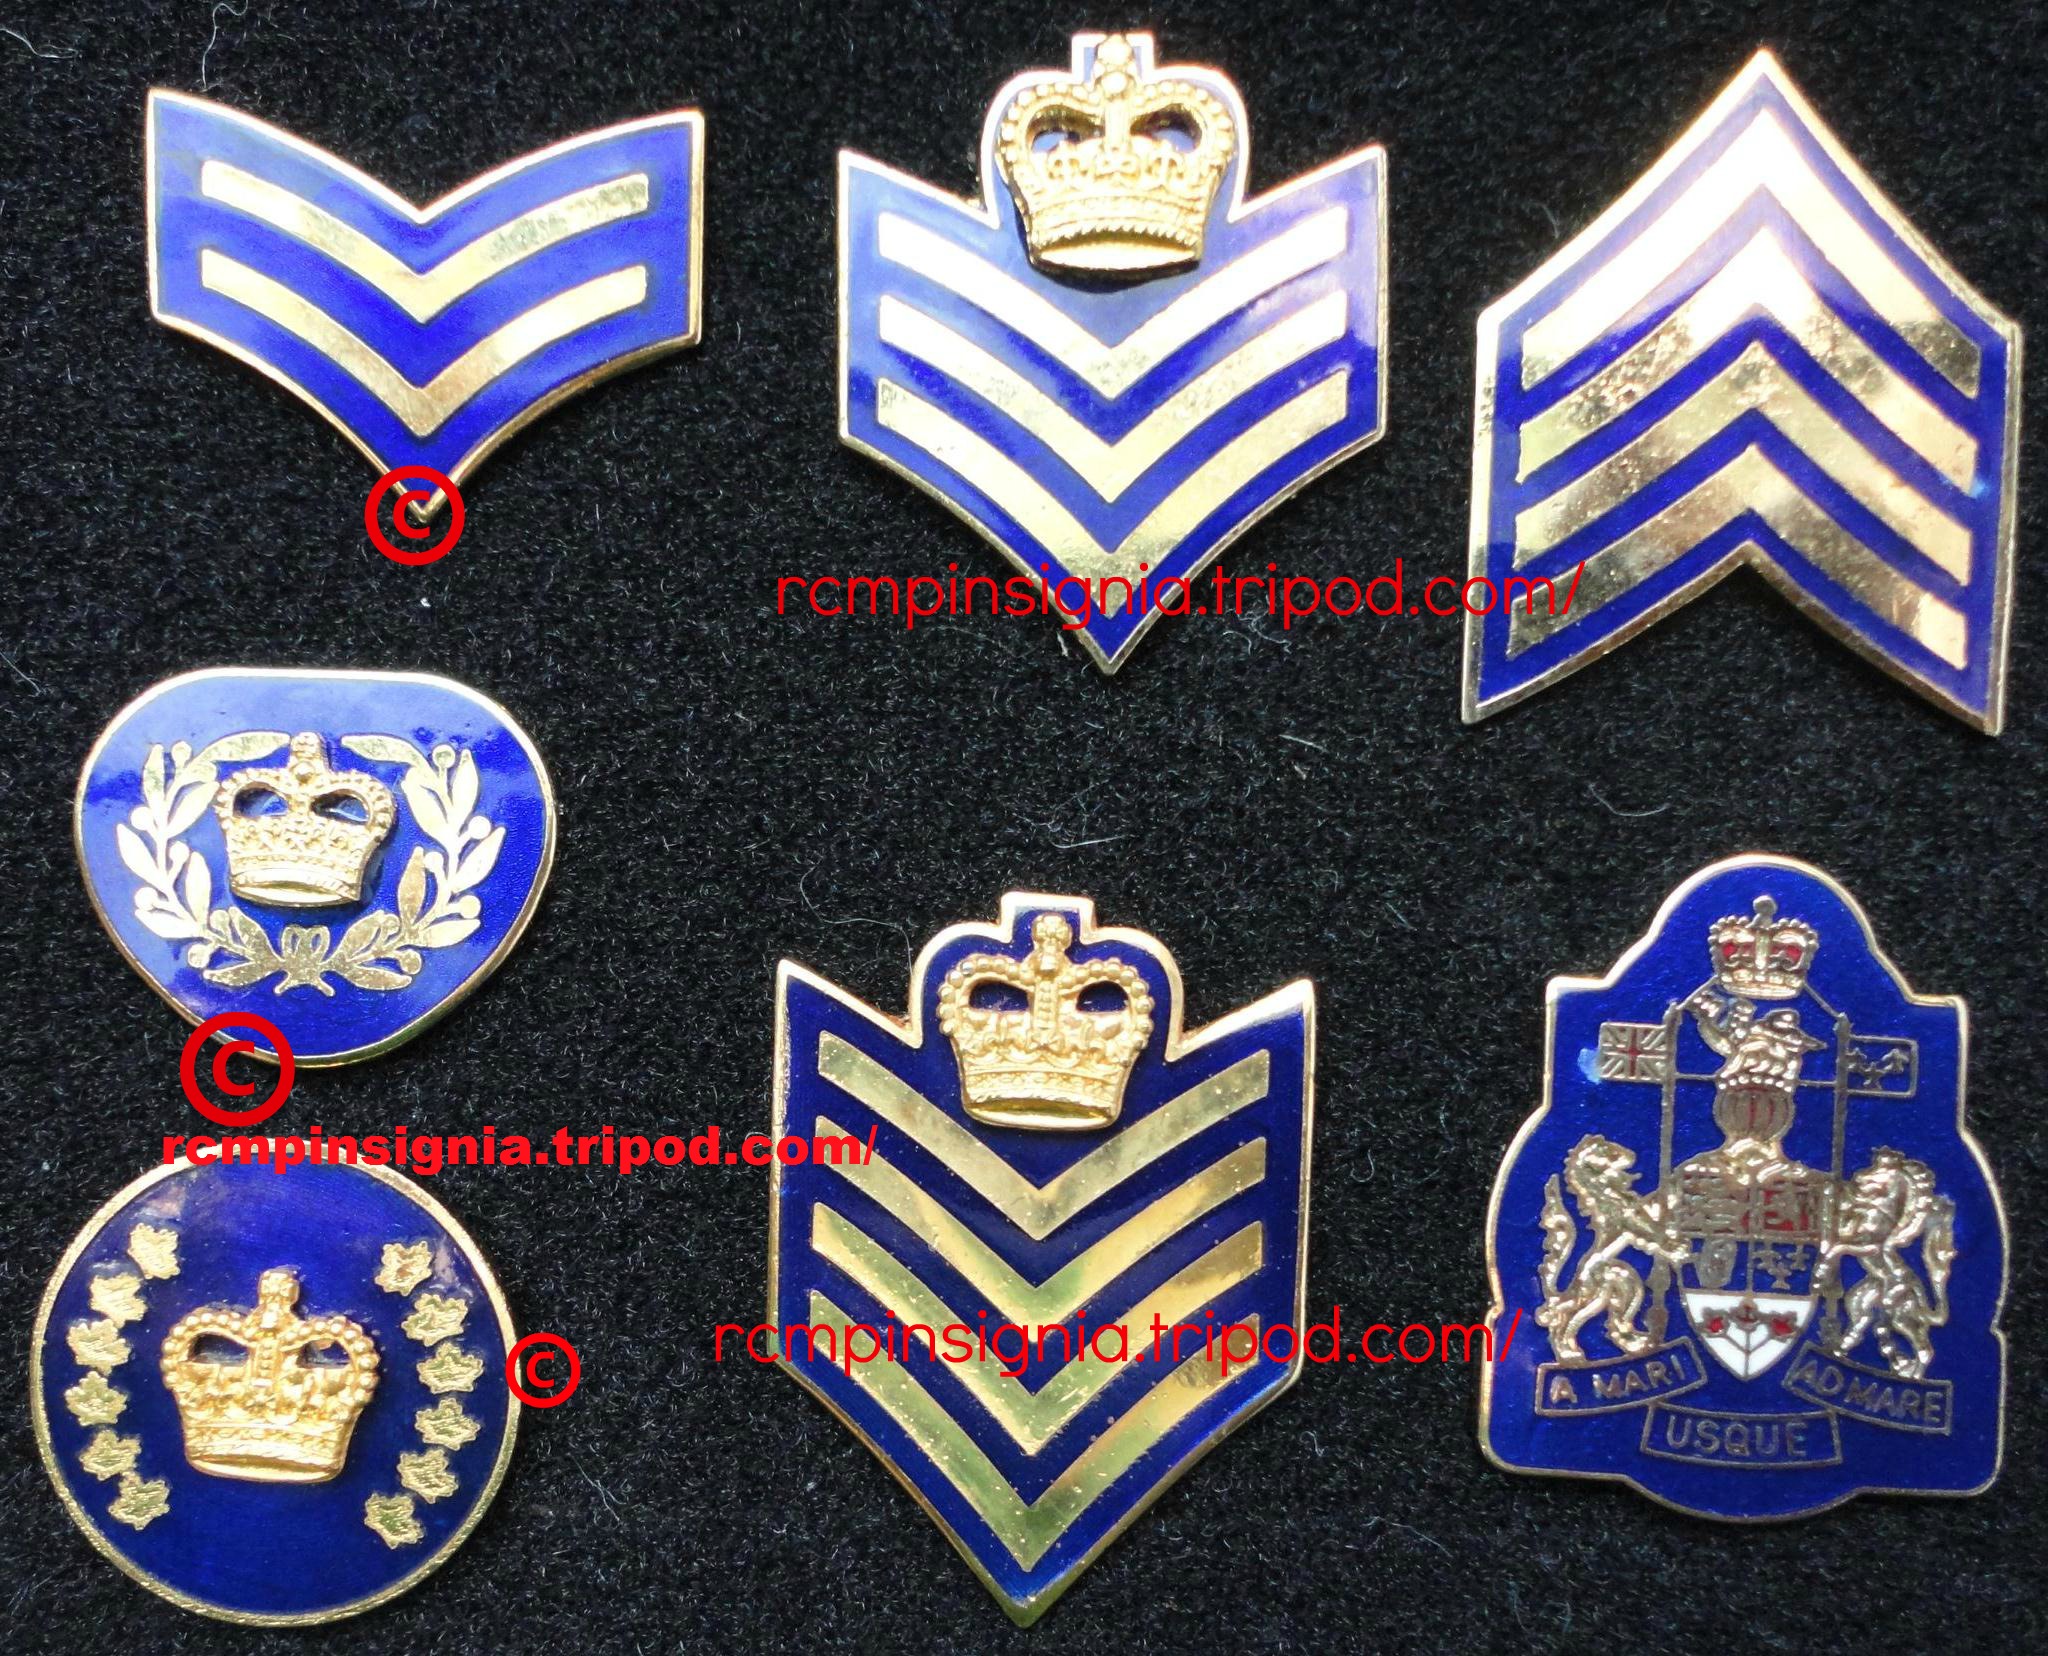 1915901 collar rank pins2.jpg?1392580765